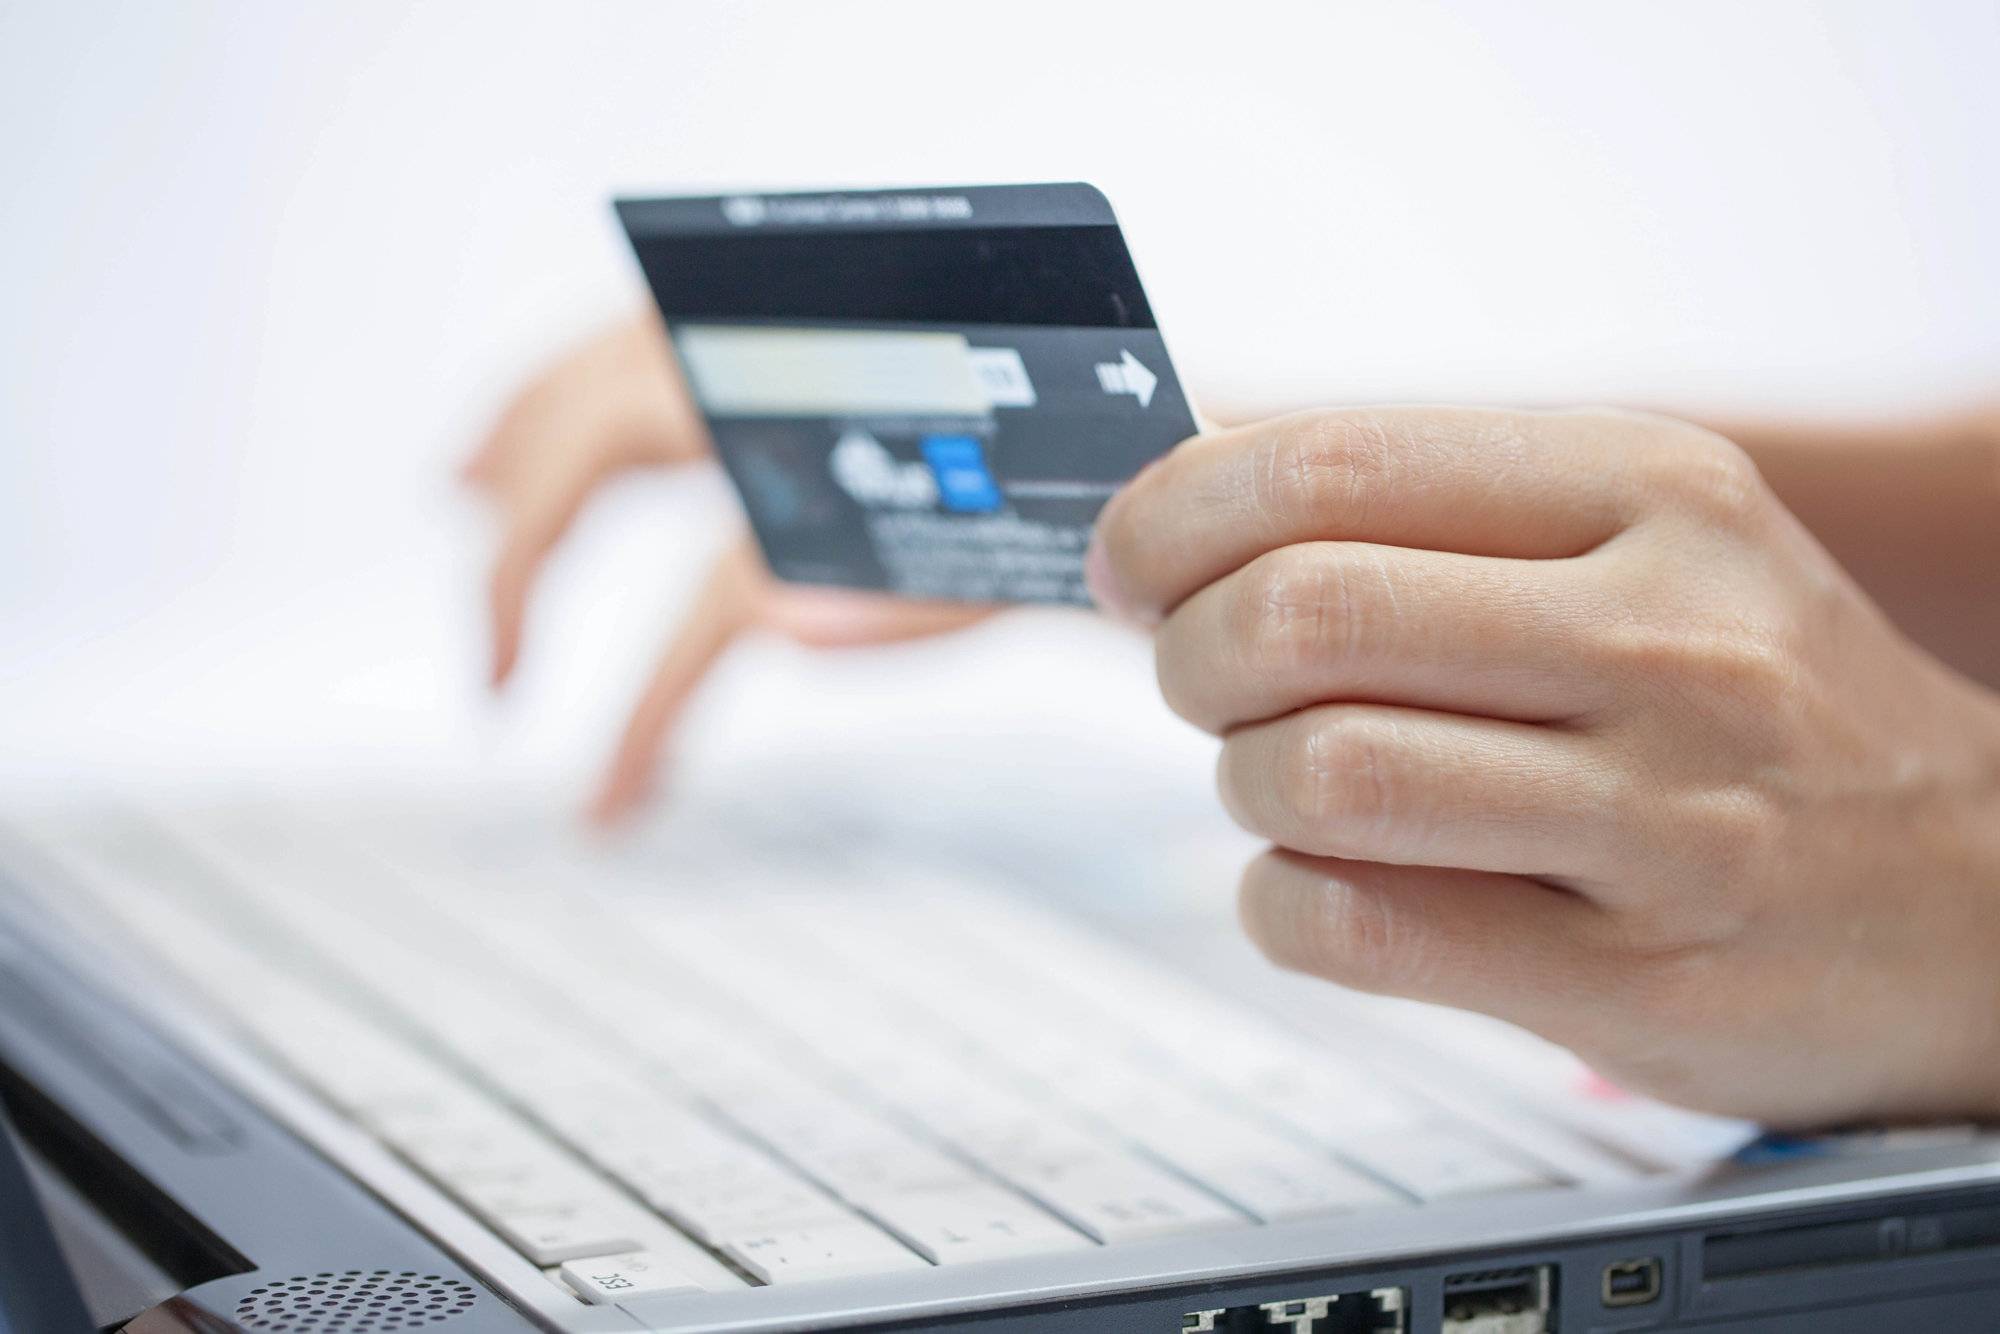 Оплата кредитной картой в интернете: жкх, кредиты и многое другое